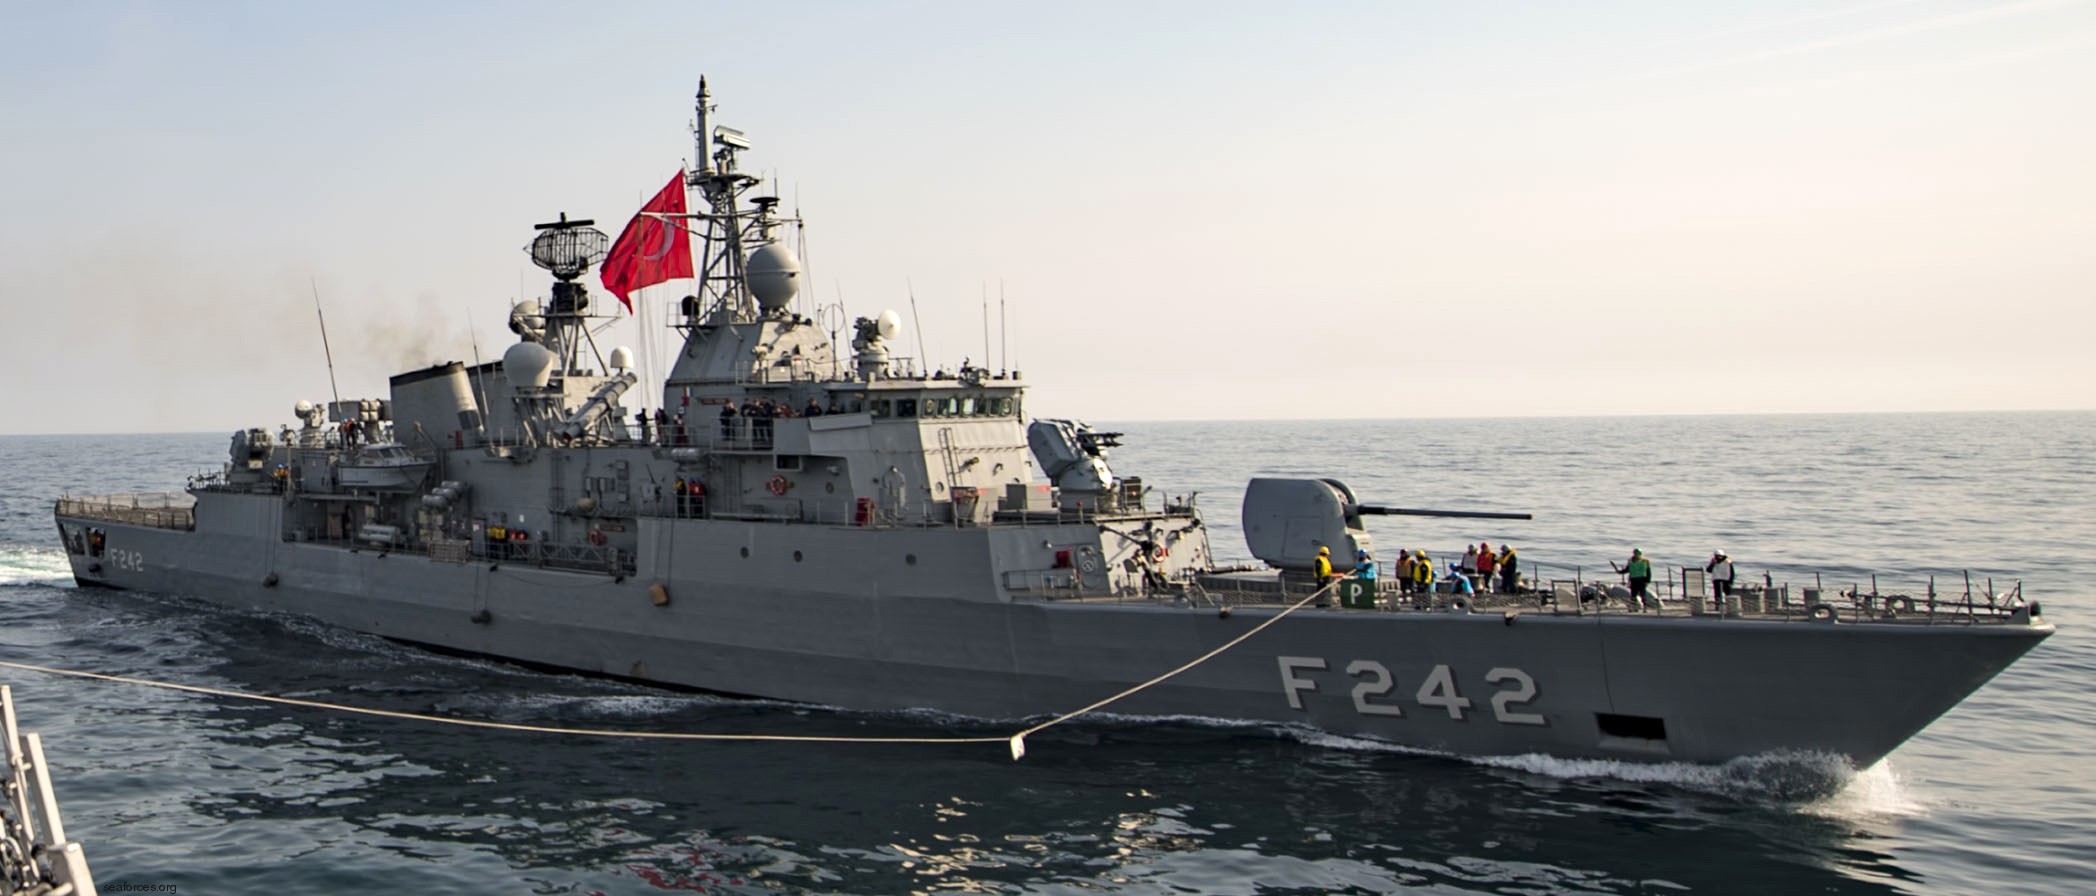 f-242 tcg fatih yavuz meko-200tn class frigate turkish navy türk deniz kuvvetleri 04x